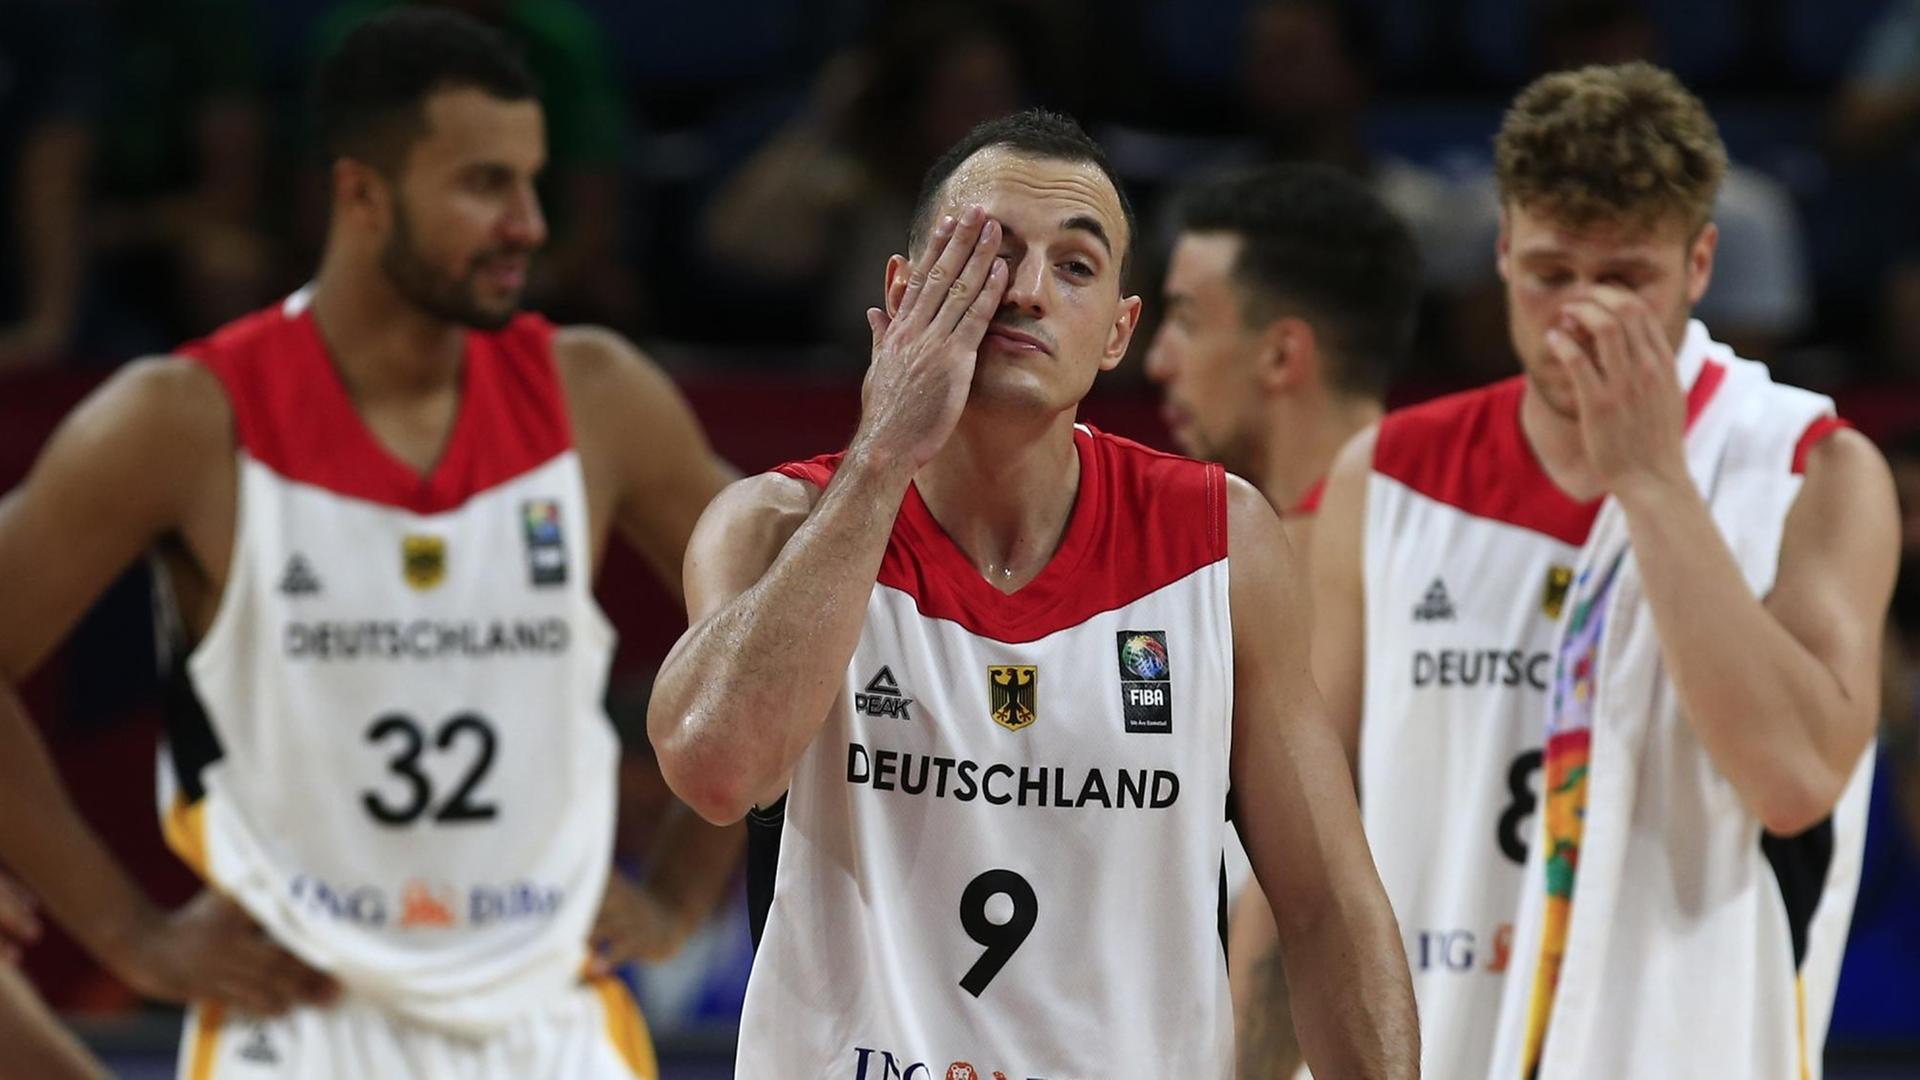 Das Bild zeigt drei Spieler der deutschen Basket-Ball-Mannschaft.